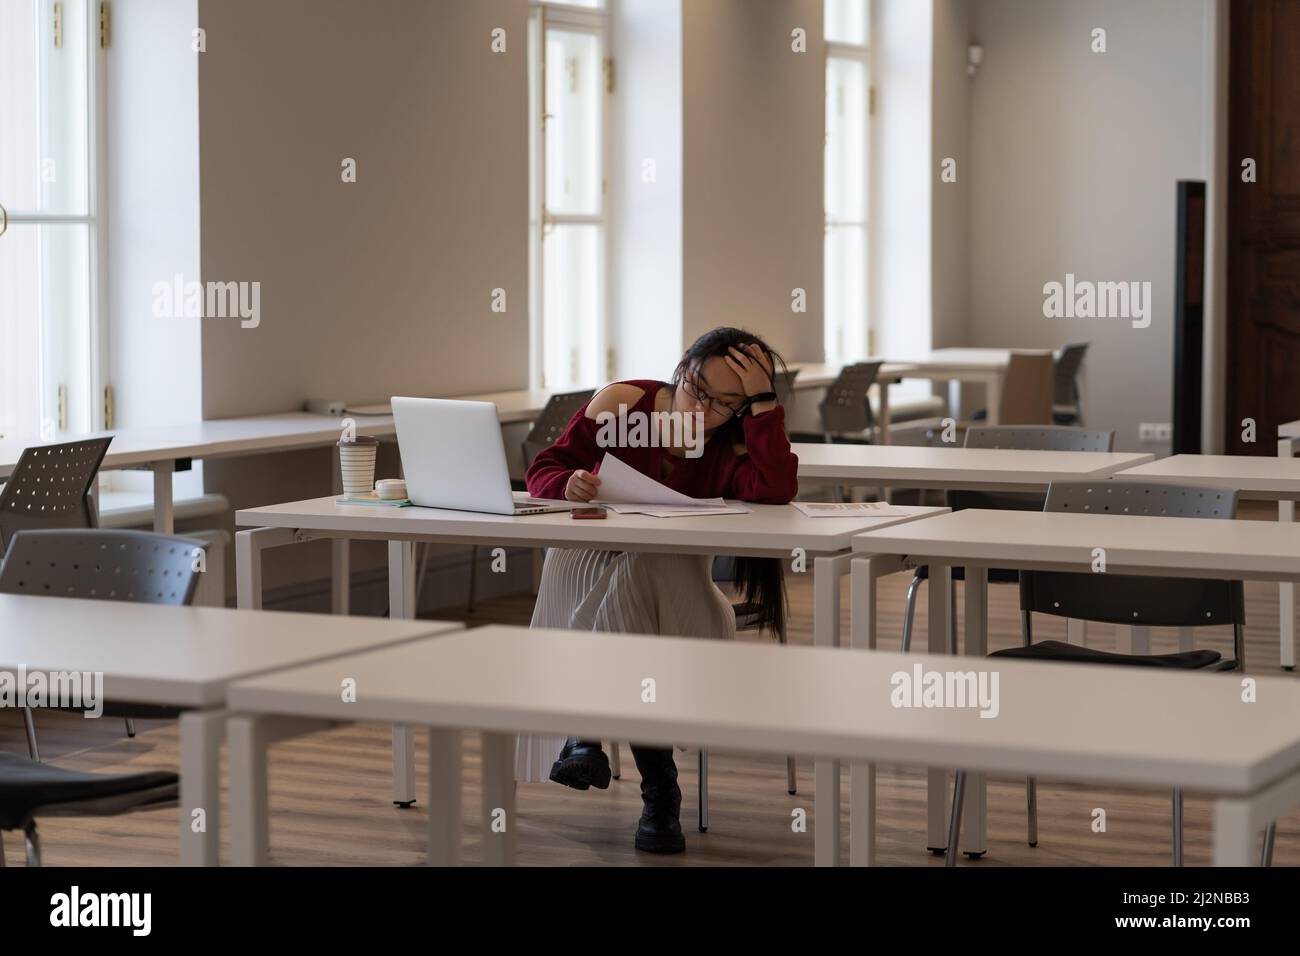 Studentessa asiatica che si sente stanca e non motivata durante lo studio in biblioteca universitaria Foto Stock